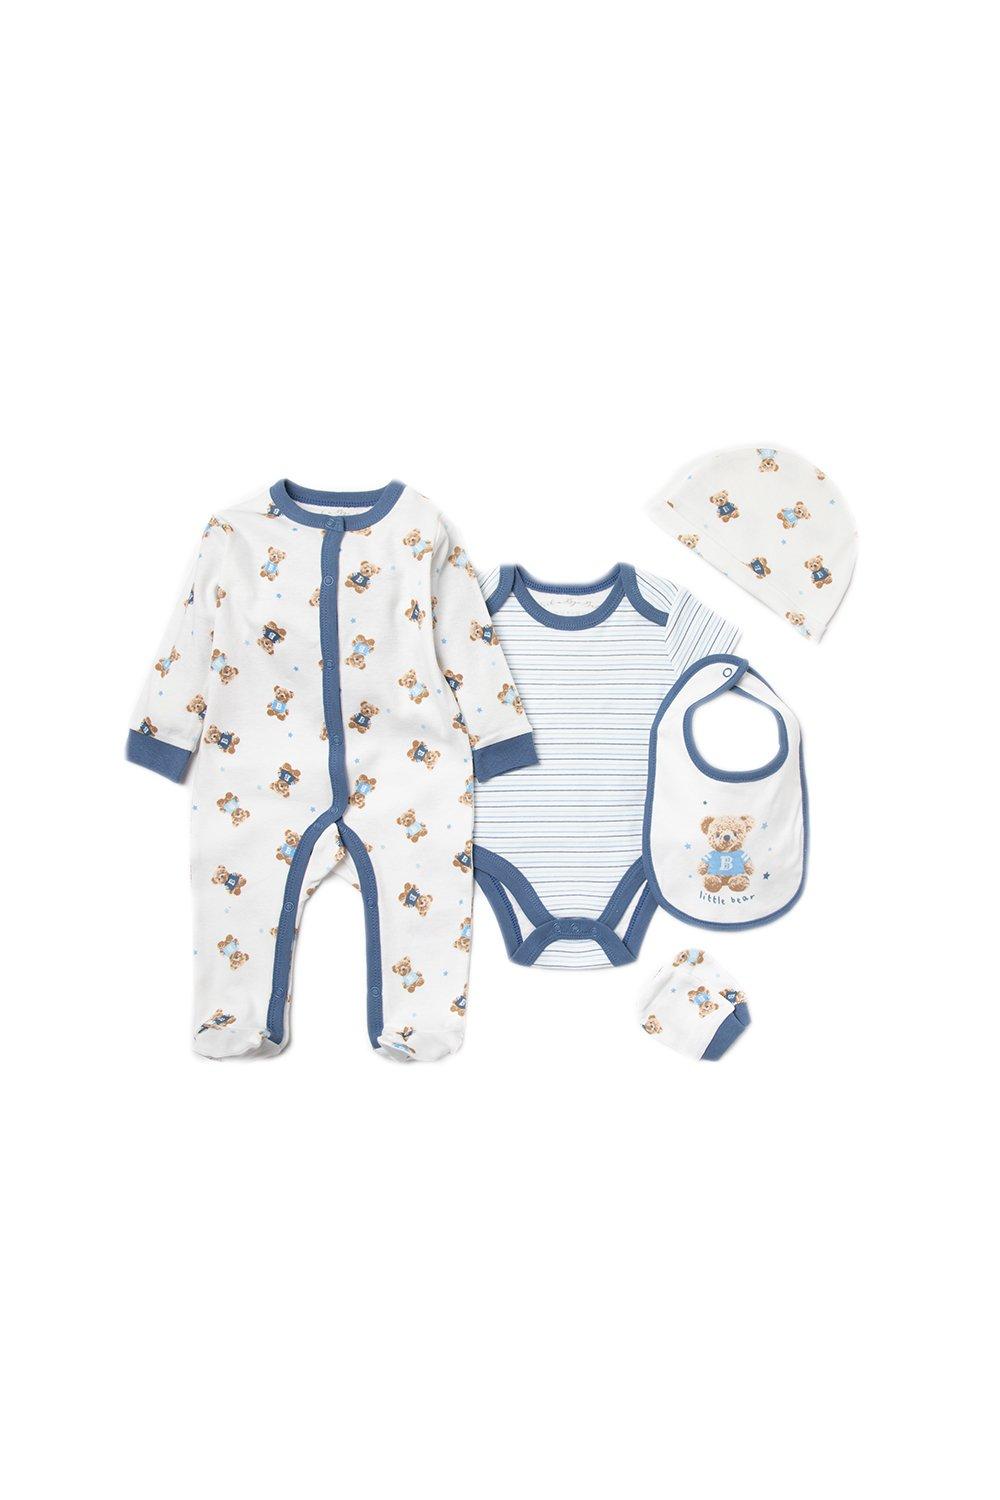 Хлопковый подарочный набор из 6 предметов с принтом медведя для ребенка Rock a Bye Baby, синий платье baby a в полоску размер 6 лет голубой